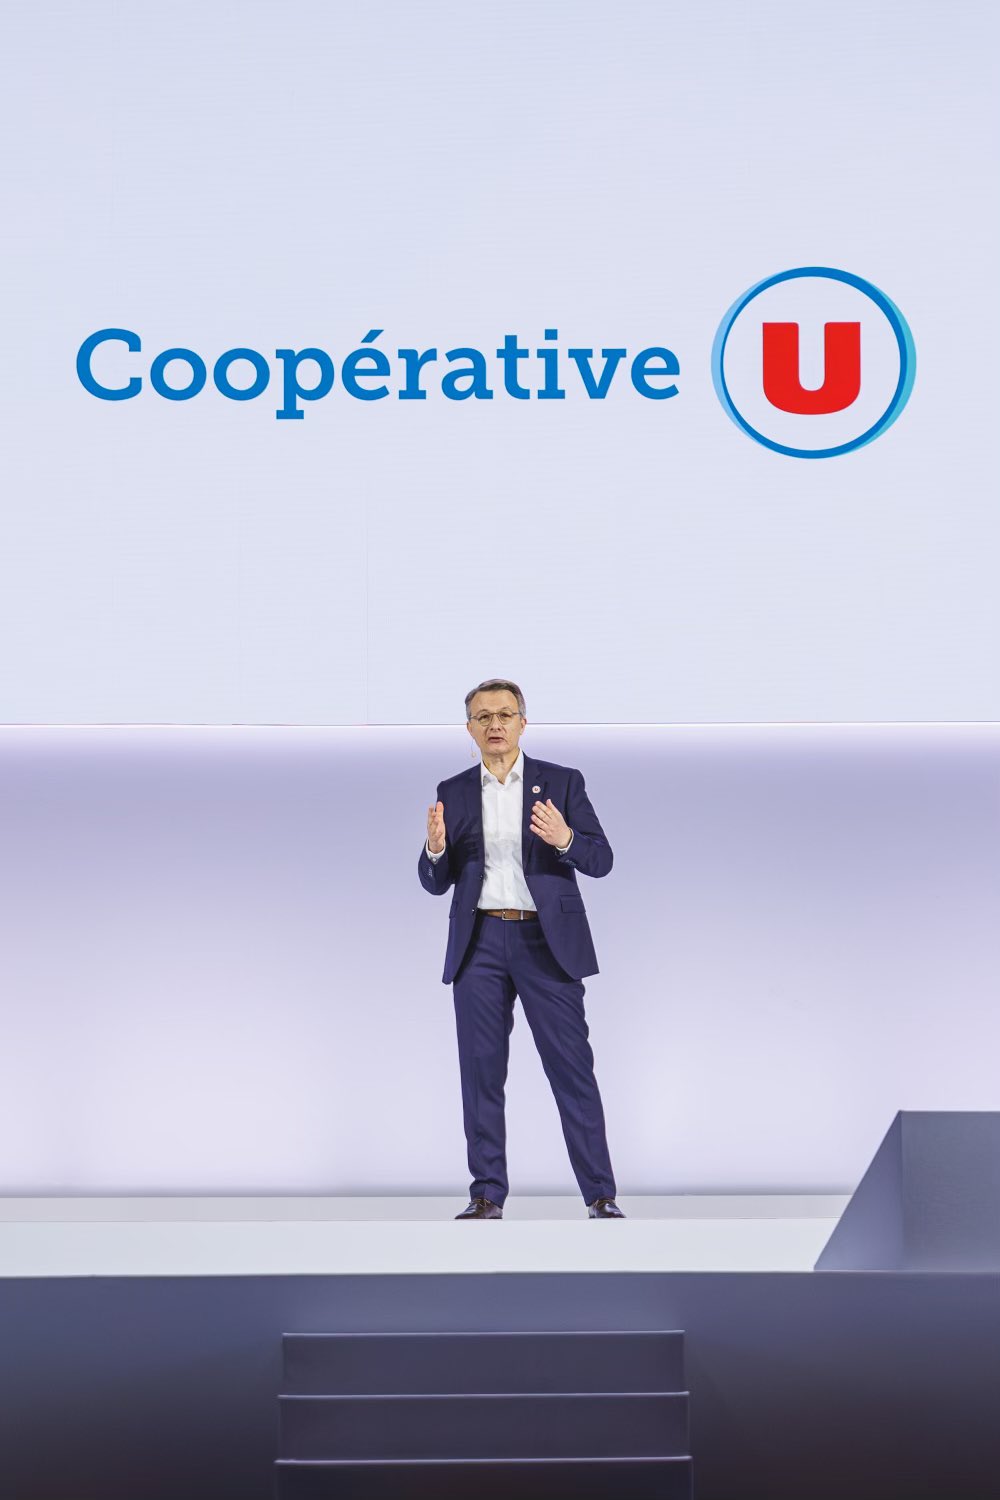 Coopérative U : un nouveau nom pour de grandes ambitions